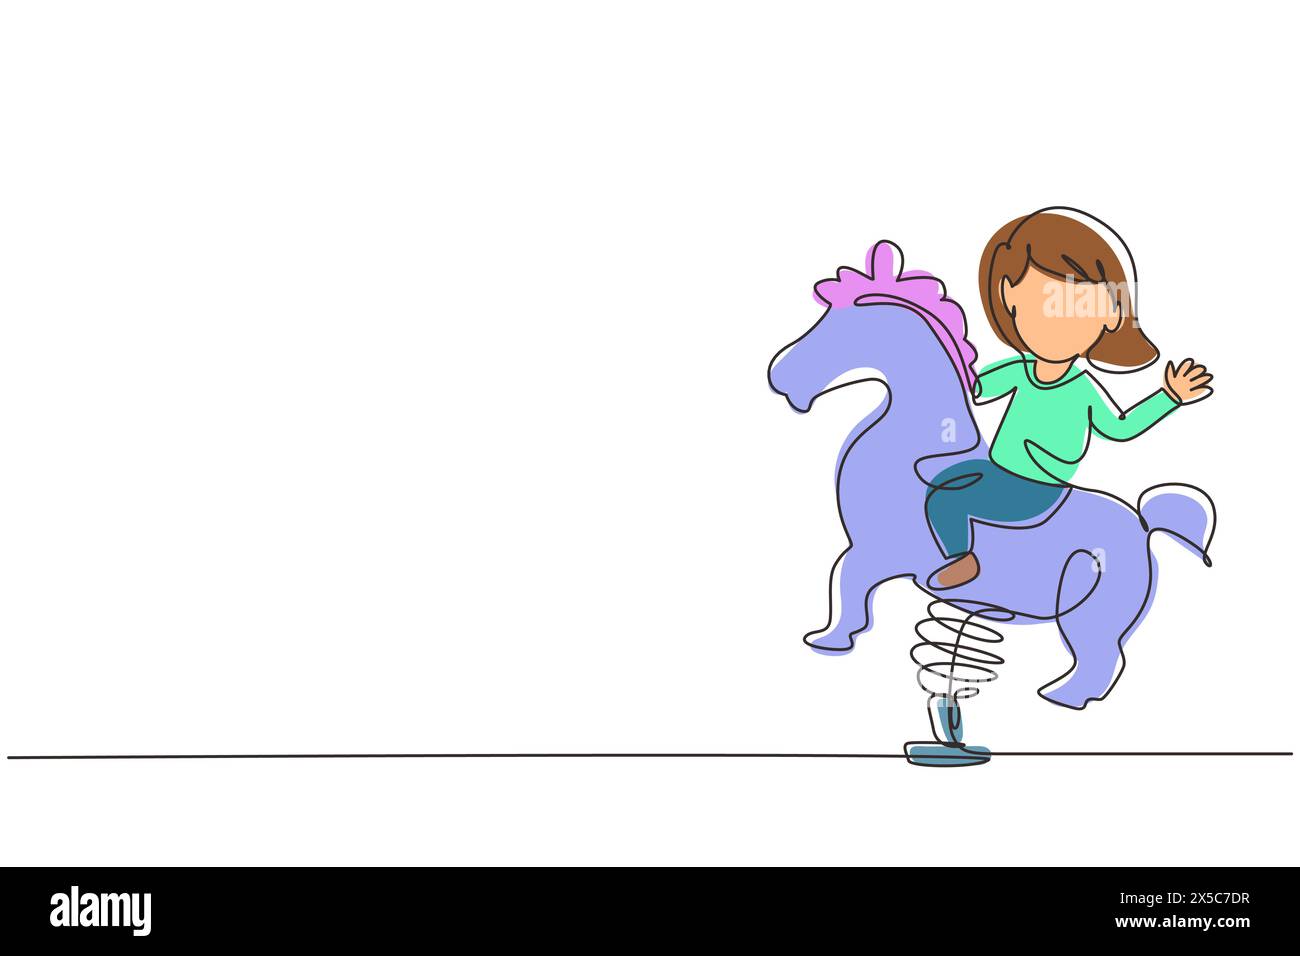 Eine einzige Linie zeichnet ein kleines Mädchen, das auf dem Spielplatz im Park reiten kann. Kinder reiten Spielzeug Pferde schaukeln. Glückliches Mädchen, das auf einem Pferd reitet und Wippe schwingt. Forts Stock Vektor